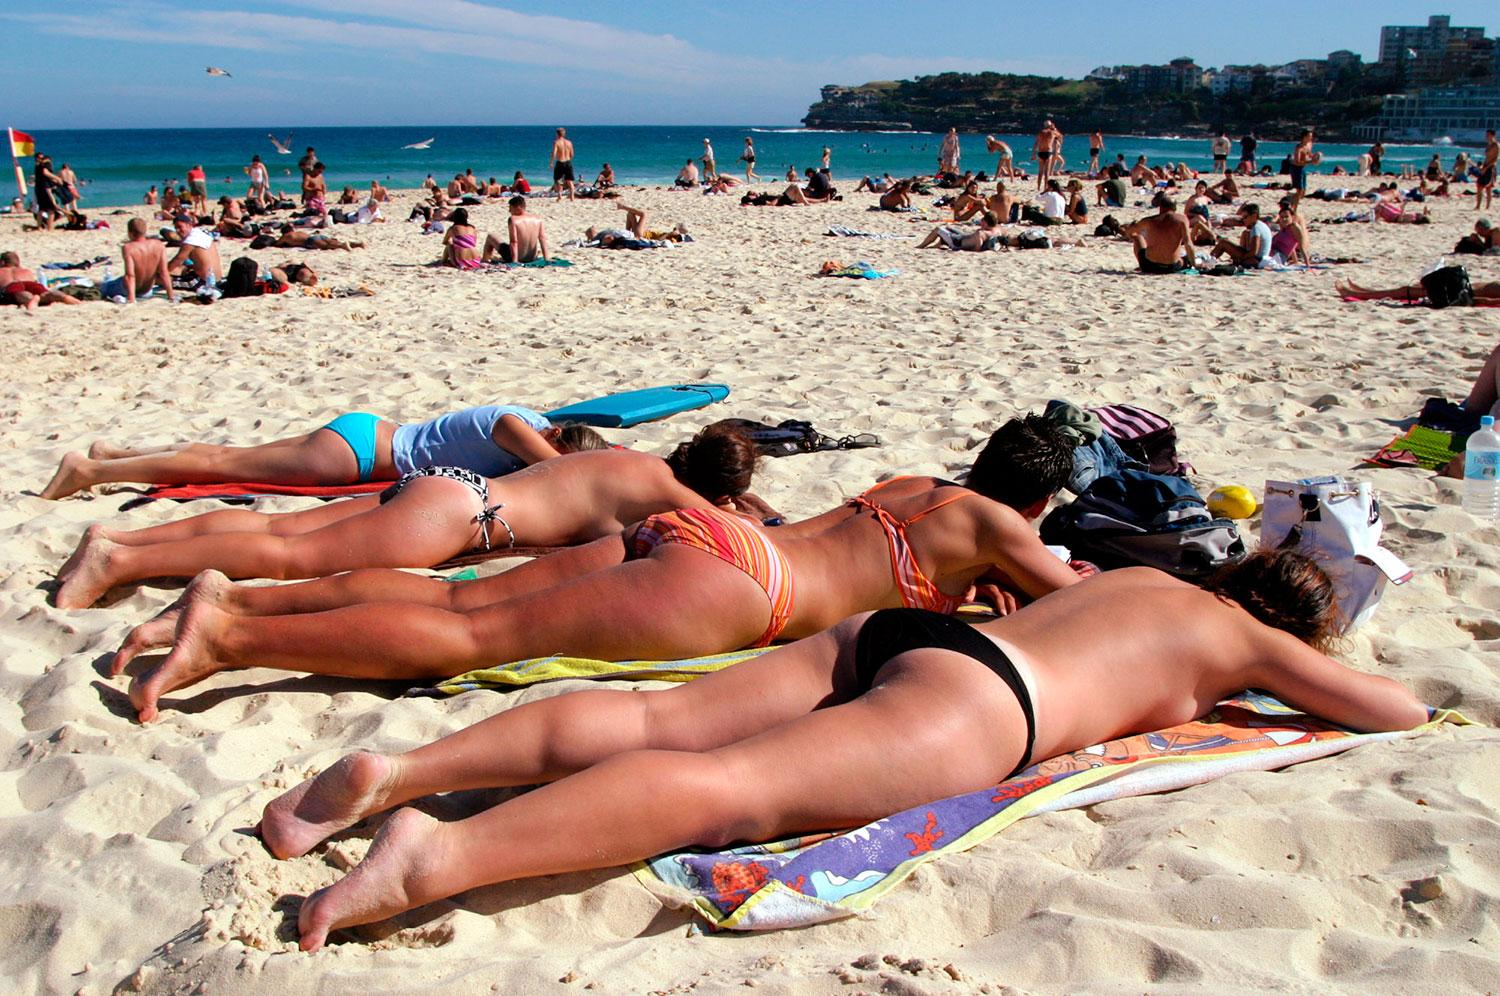 BONDI BEACH, AUSTRALIEN Stranden i Sydney är en av världens mest kända. Har den udda noteringen ”Världens största baddräktsbild” i Guinness rekordbok: 2007 togs här ett foto med hela 1100 bikiniklädda kvinnor på stranden!